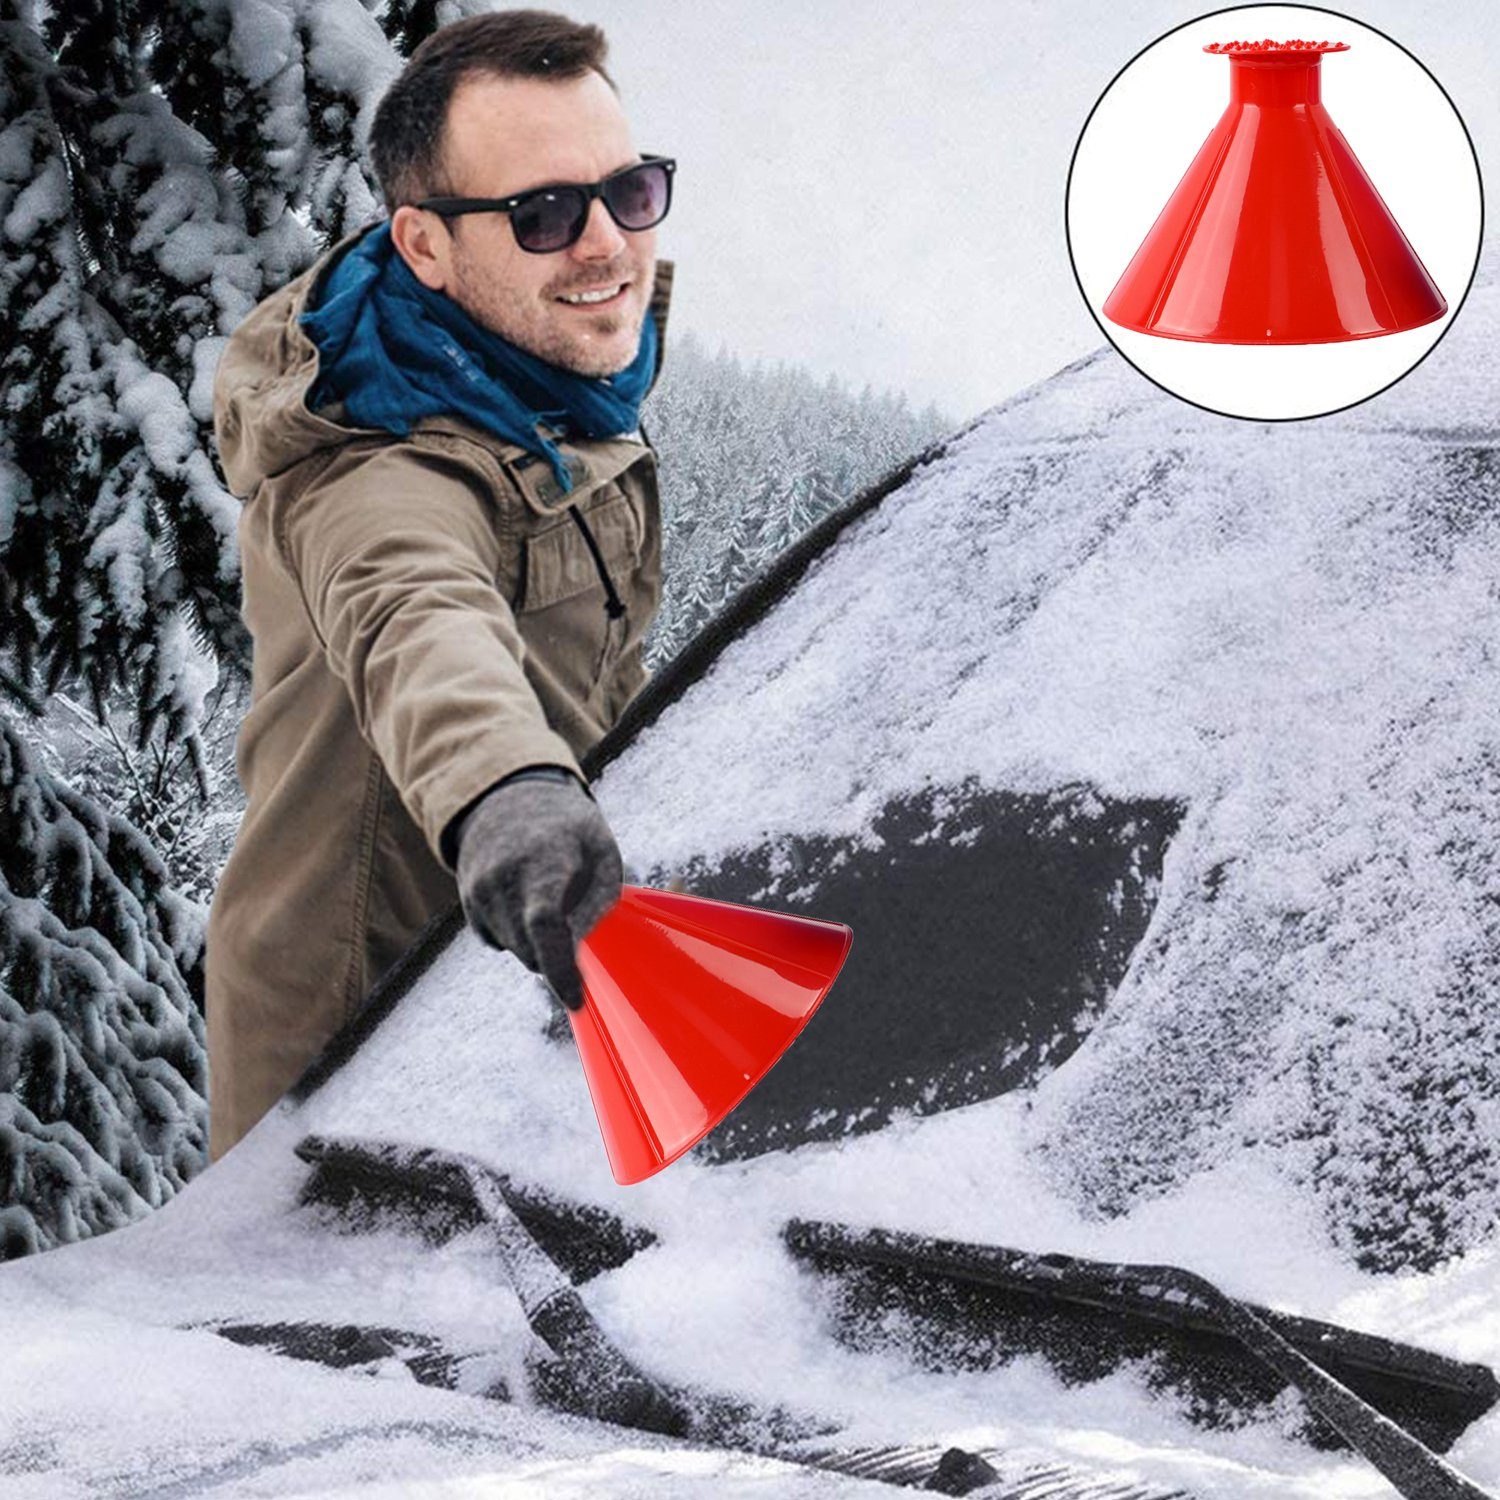 Eiskratzer für die Windschutzscheibe des Autos, Schneekratzer für das color  Rot